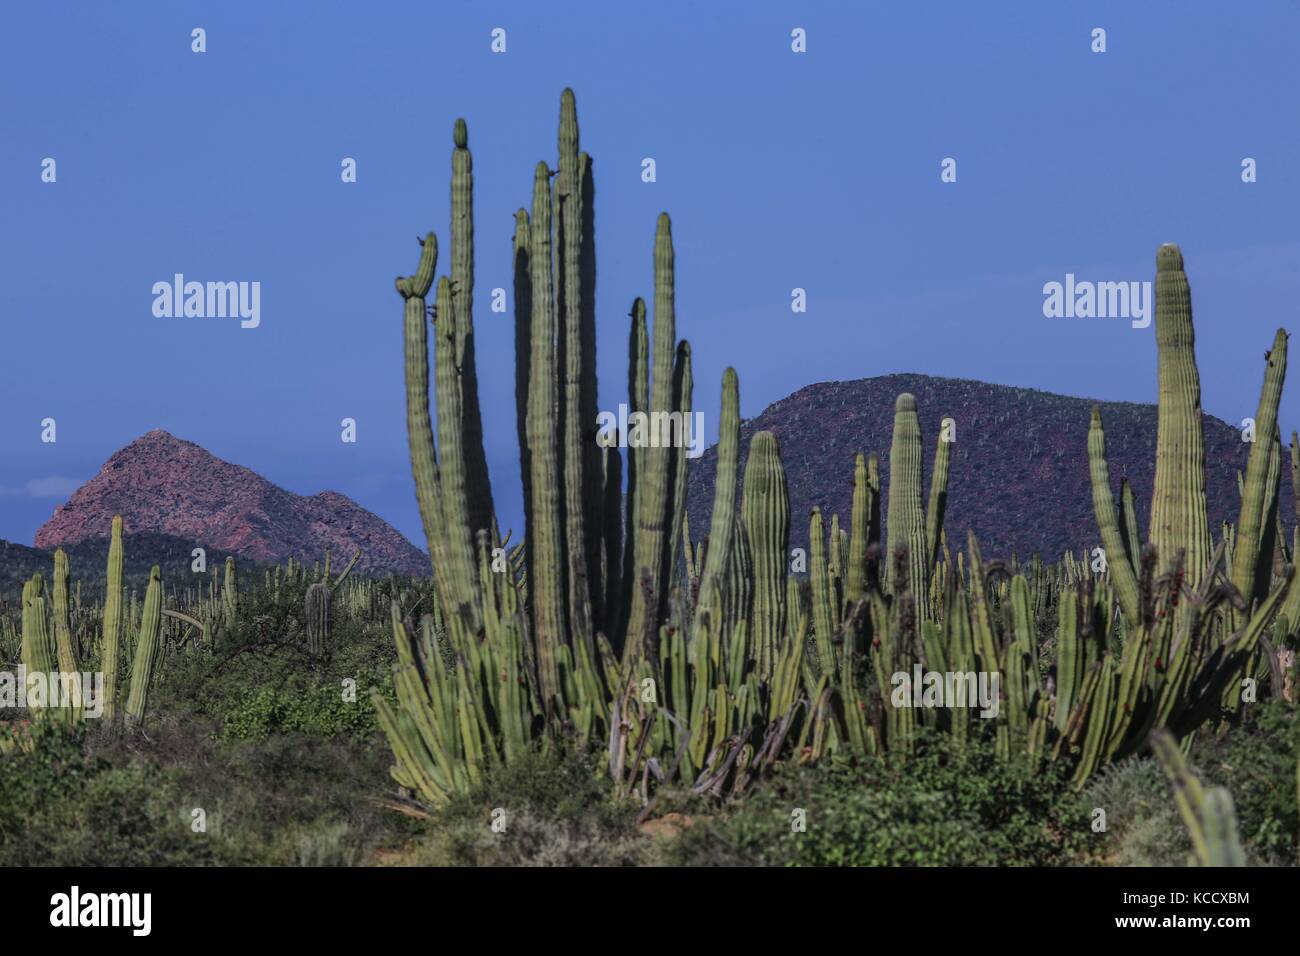 Sahuaros Wald, pitahaya und einige endemische Arten von Kakteen der Region in der Wüste neben dem Strand der Colorado in Sonora Mexiko. Stockfoto